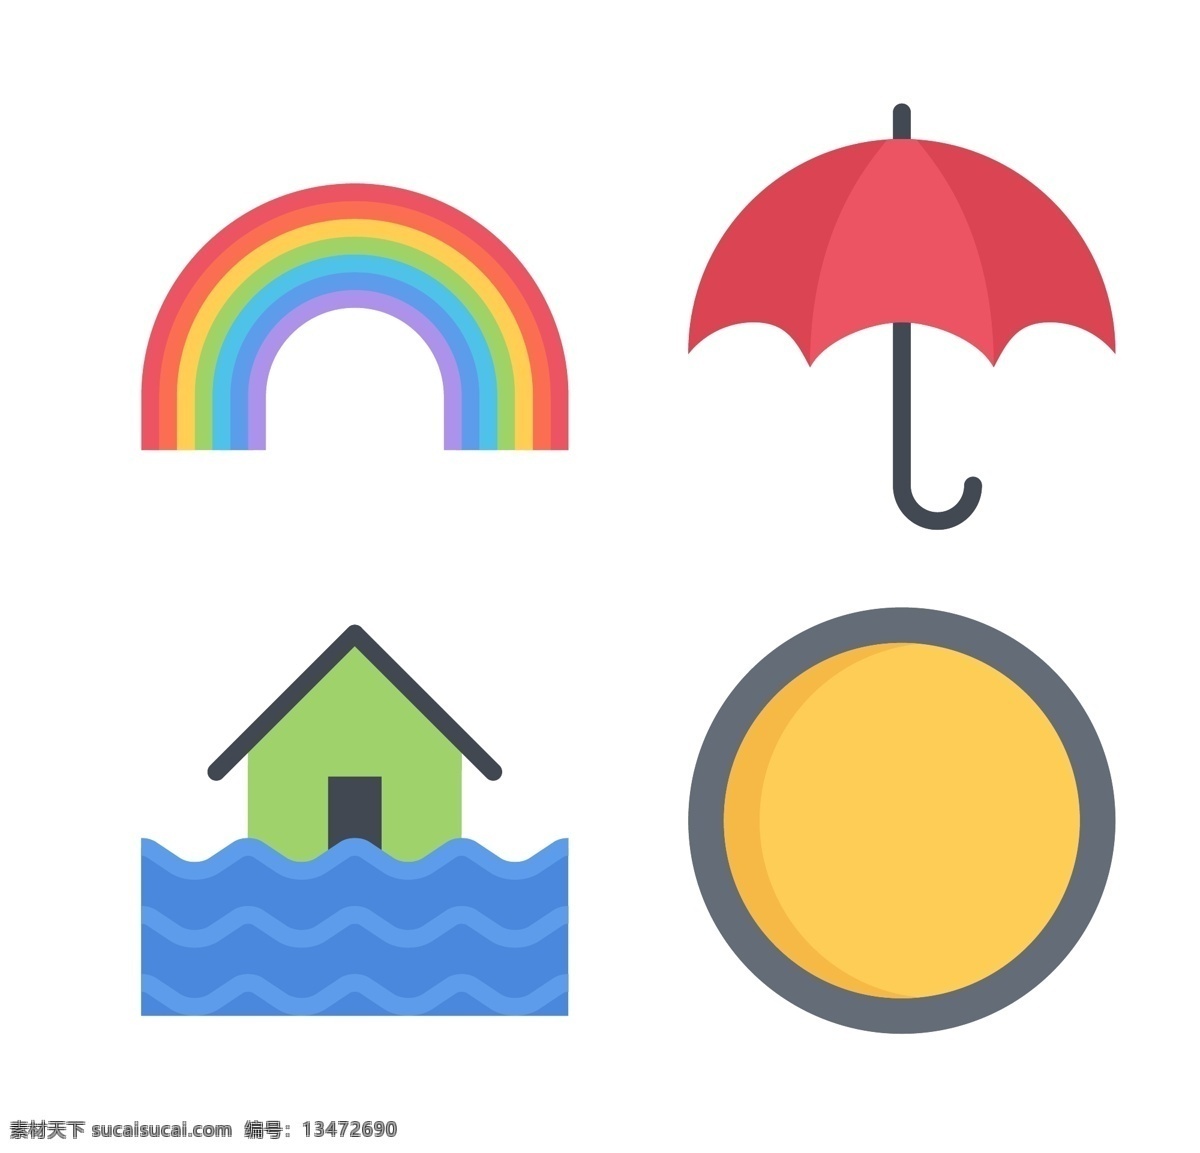 天气 简洁 矢量 icon 网页模板 雨伞 彩虹 网页 图标 模板下载 网页图标 漂亮图标